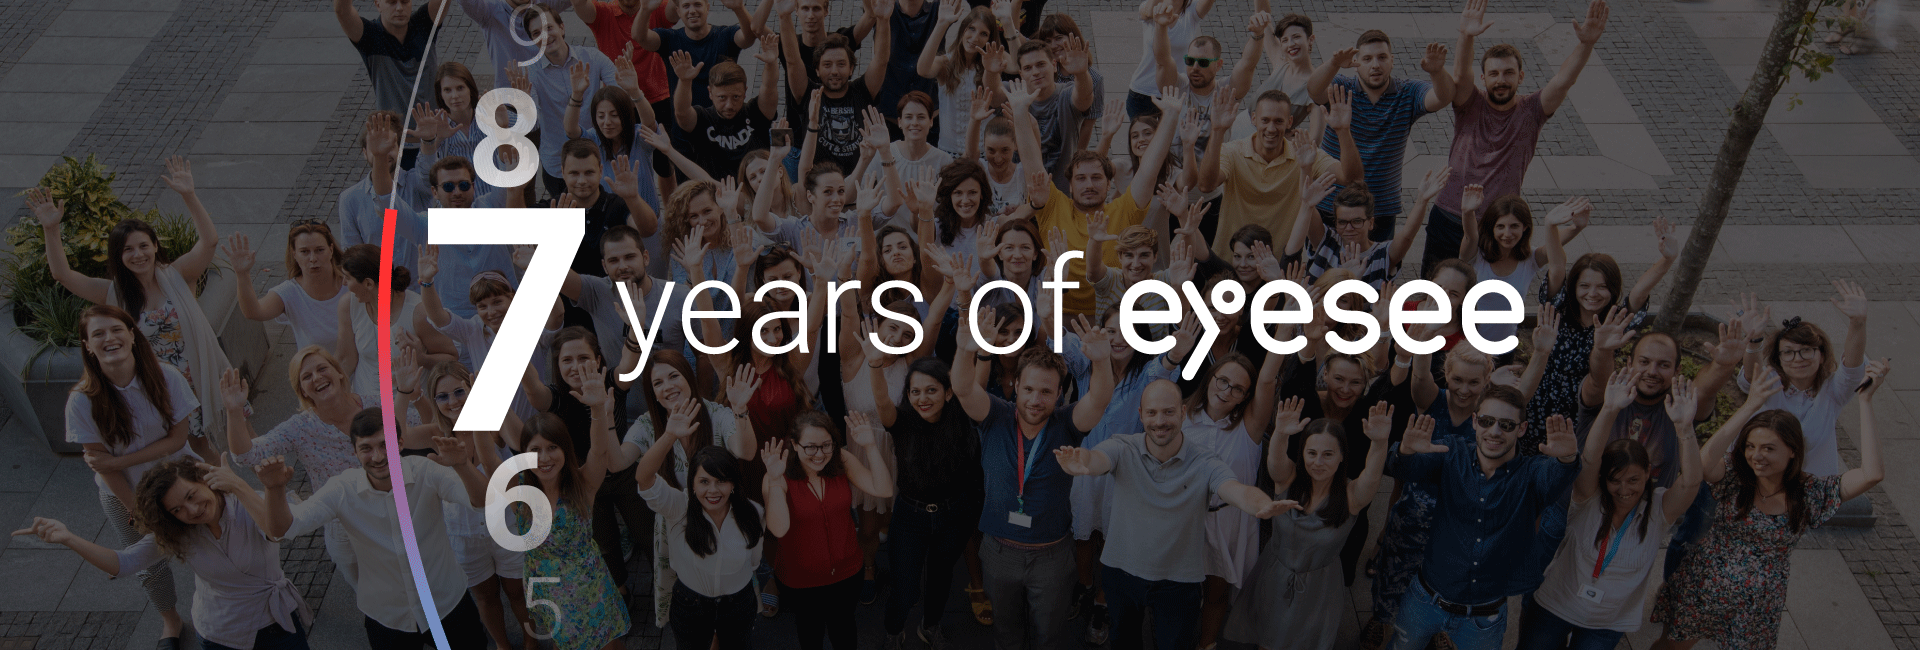 7 years of EyeSee